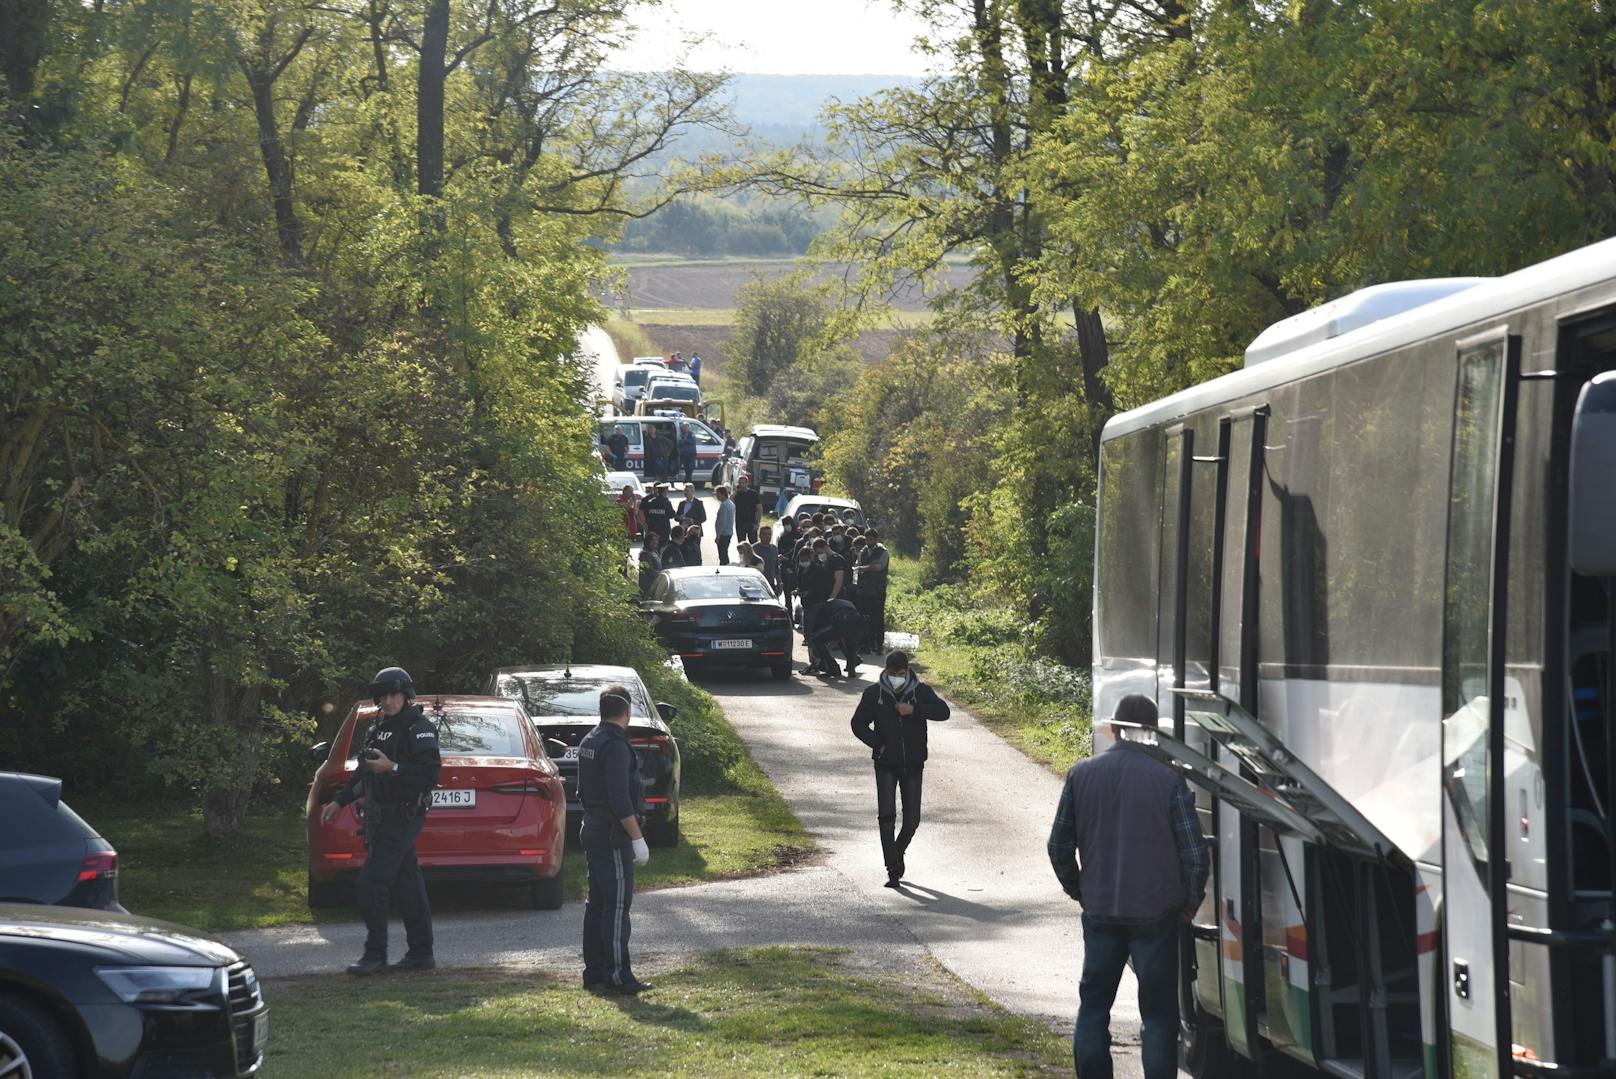 Zwei Flüchtlinge tot in voll besetztem Kleinbus entdeckt